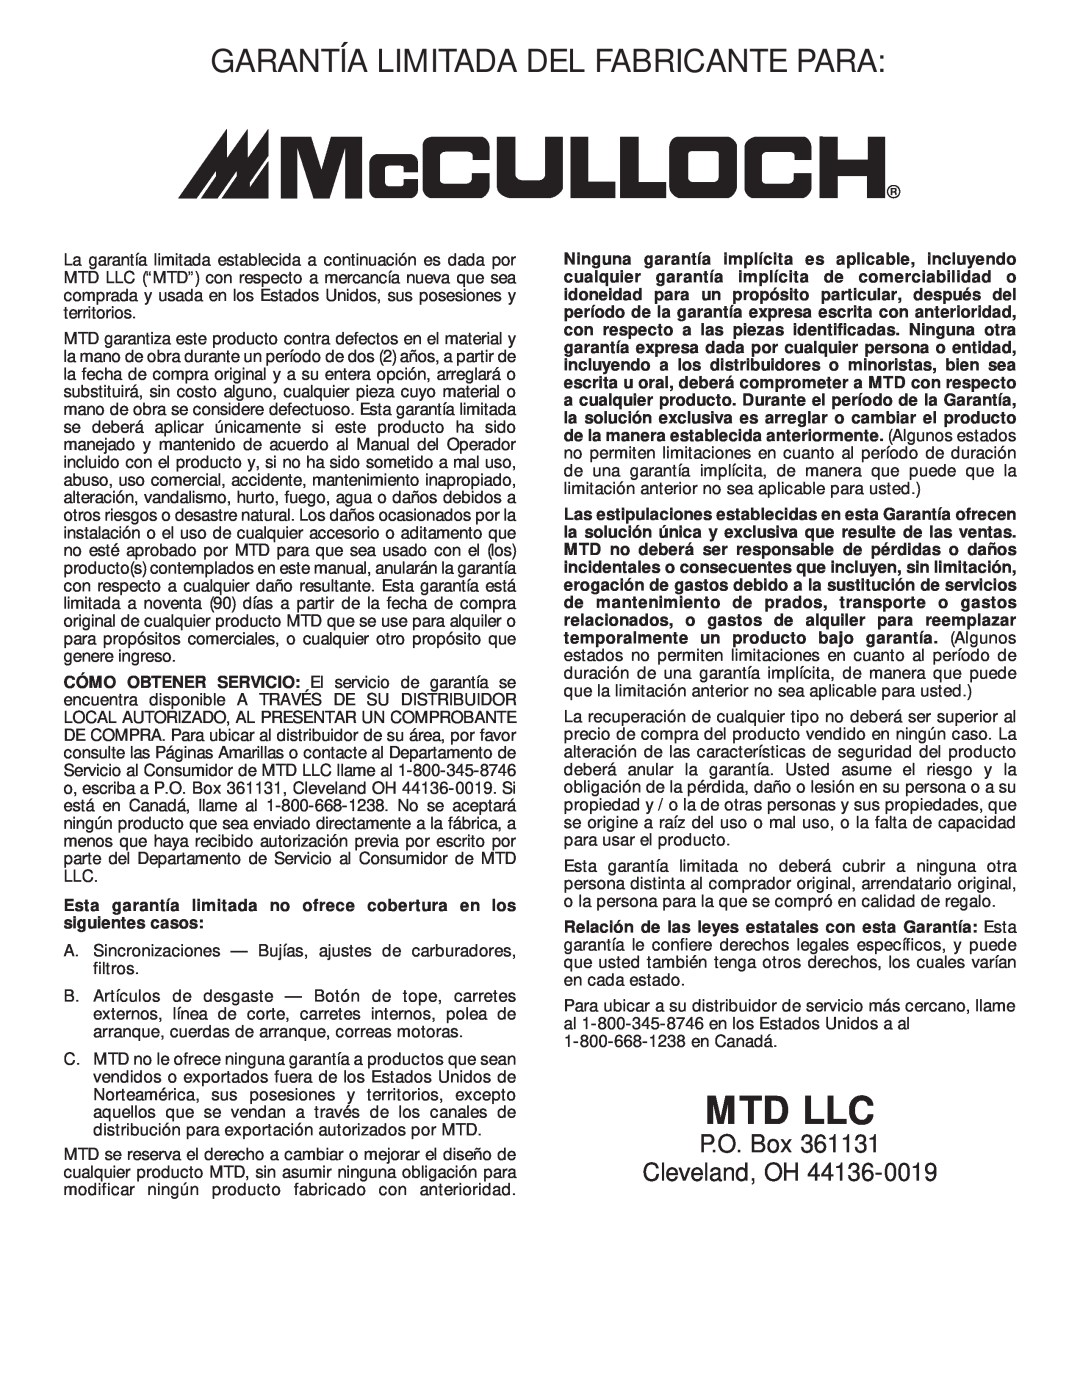 McCulloch MT705 Garantía Limitada Del Fabricante Para, Esta garantía limitada no ofrece cobertura en los siguientes casos 